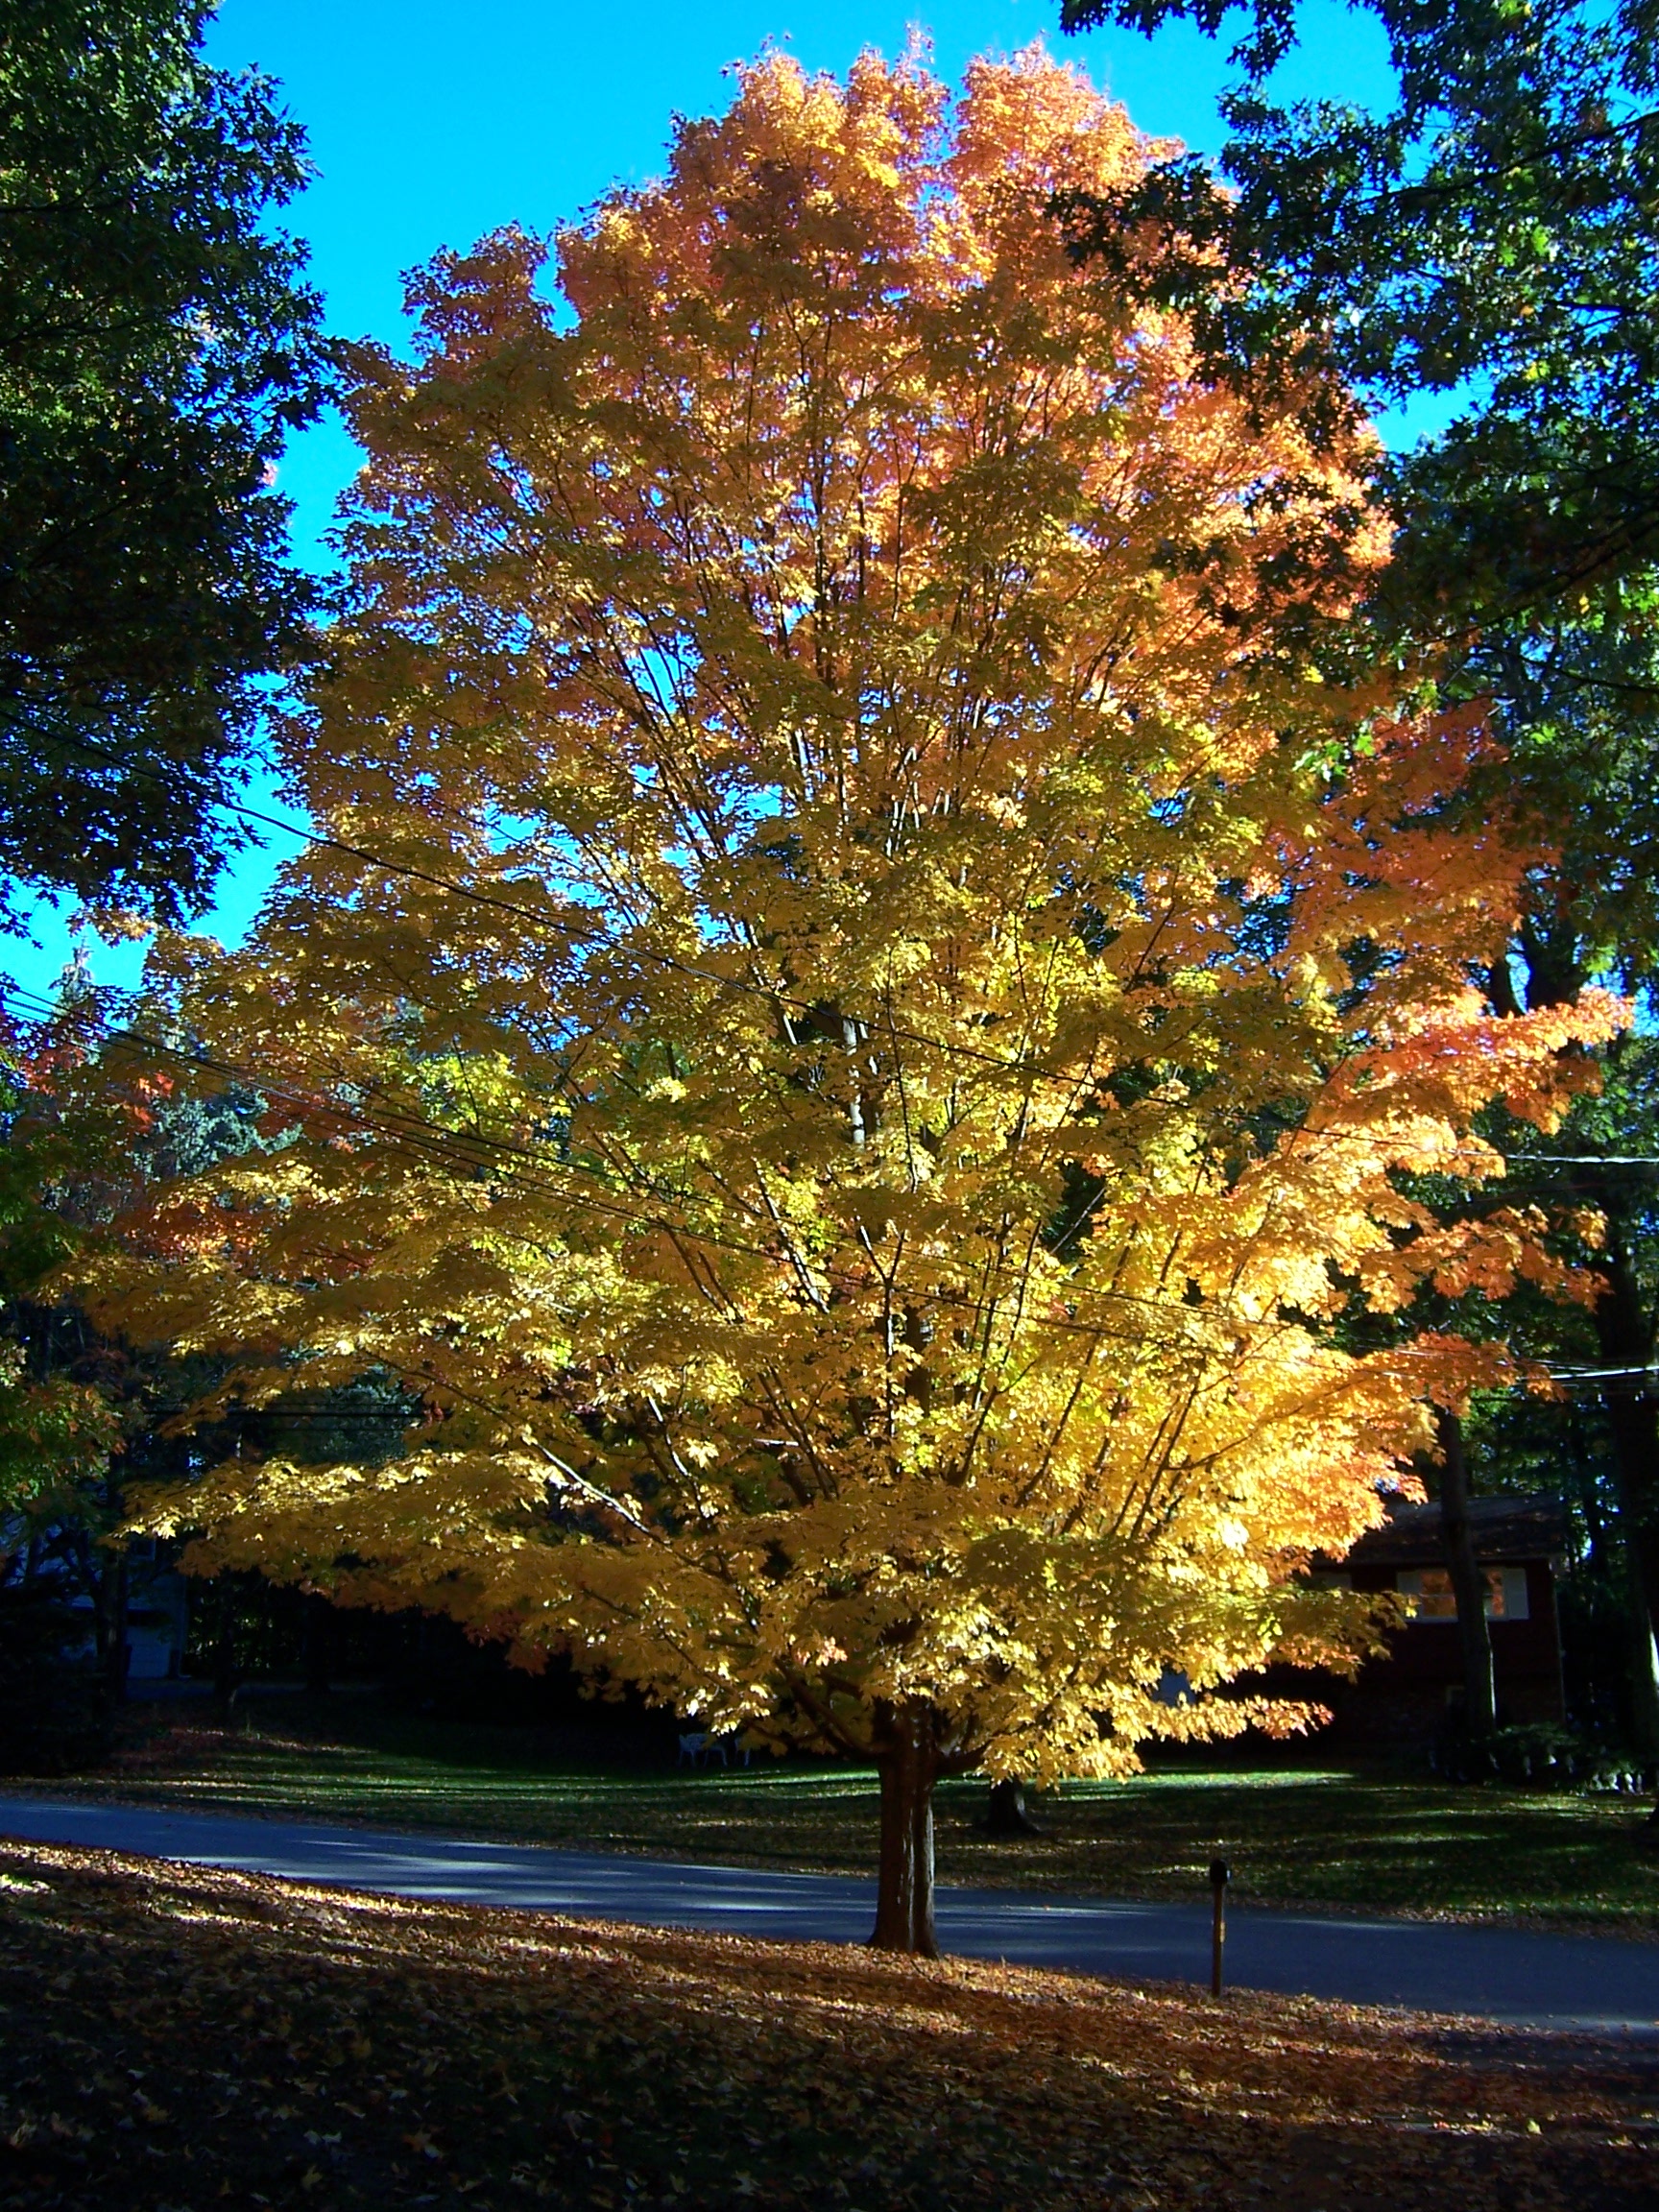 File:Autumn Tree.JPG - Wikipedia